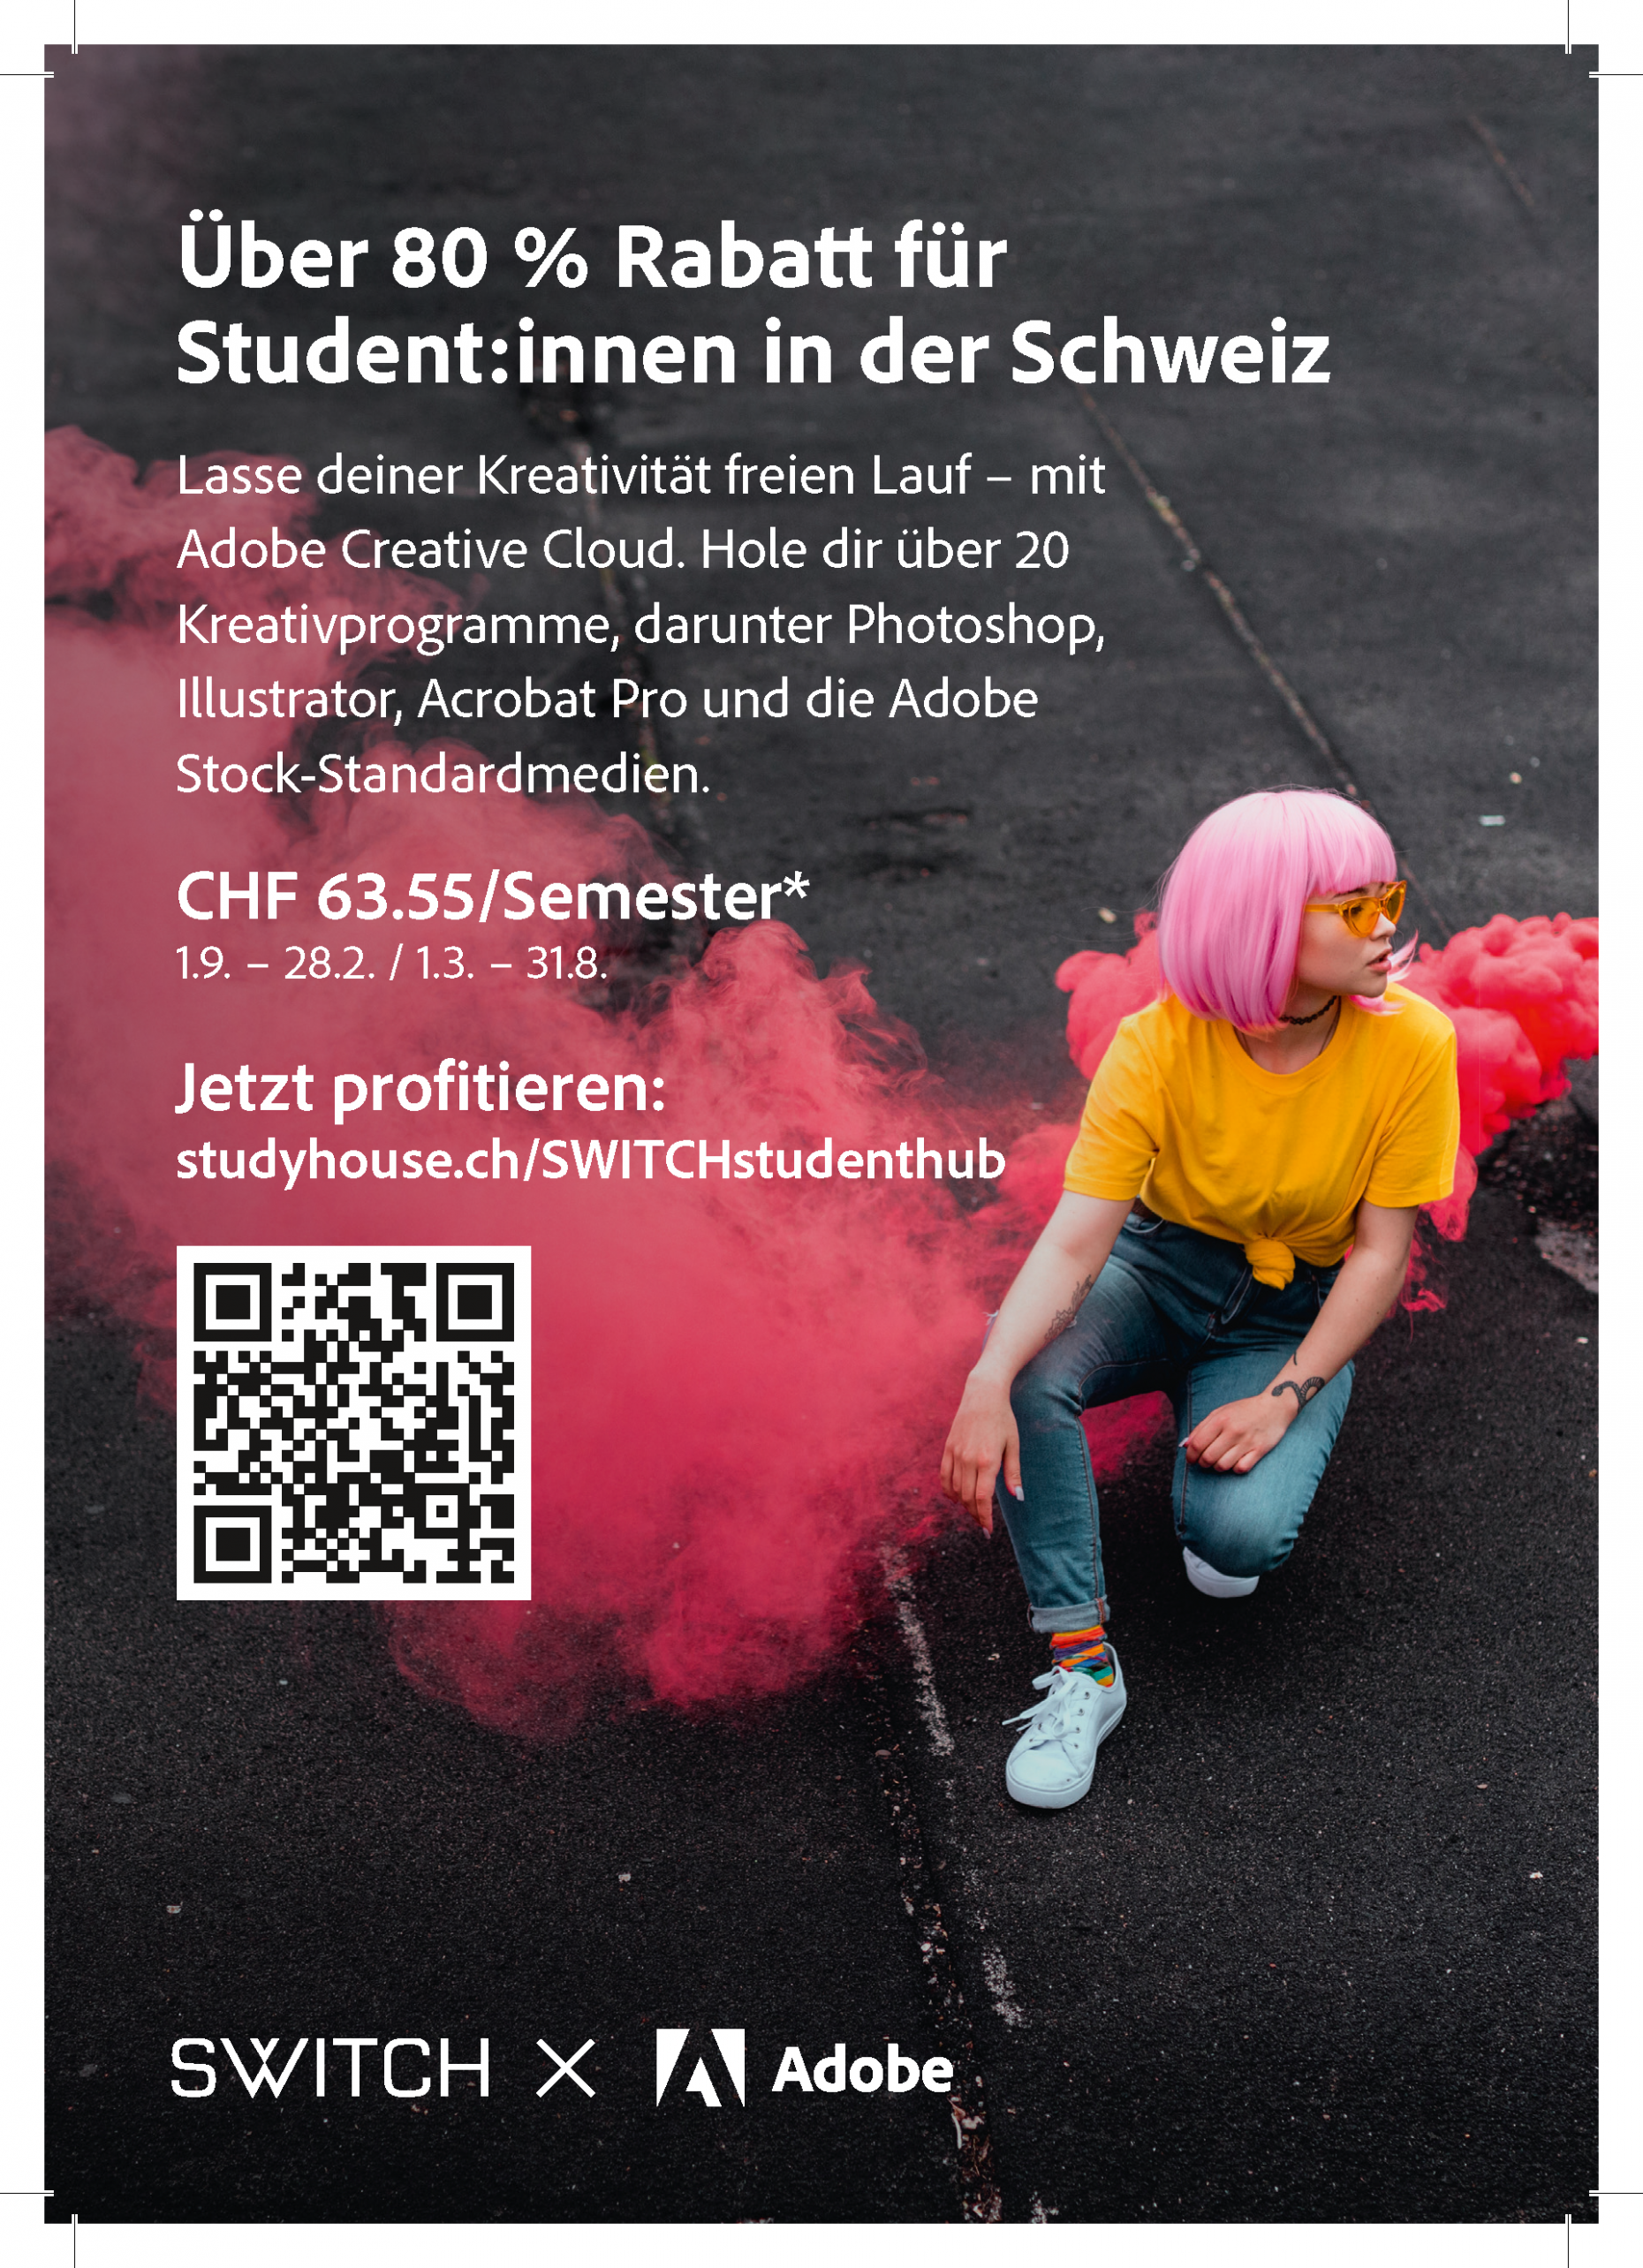 Über 80% Rabatt für Studierende in der Schweiz. Lasse deiner Kreativität freien Lauf - mit Adobe Creative Cloud. Hole dir über 20 Kreativprogramme, darunter Photoshop, Illustrator, Acrobat Pro und die Adobe Stock-Standardmedien. CHF 63.55/Semester * (1.9. - 28.2. / 1.3.-31.8.). Jetzt profitieren: studyhouse.ch/SWITCHstudenthub